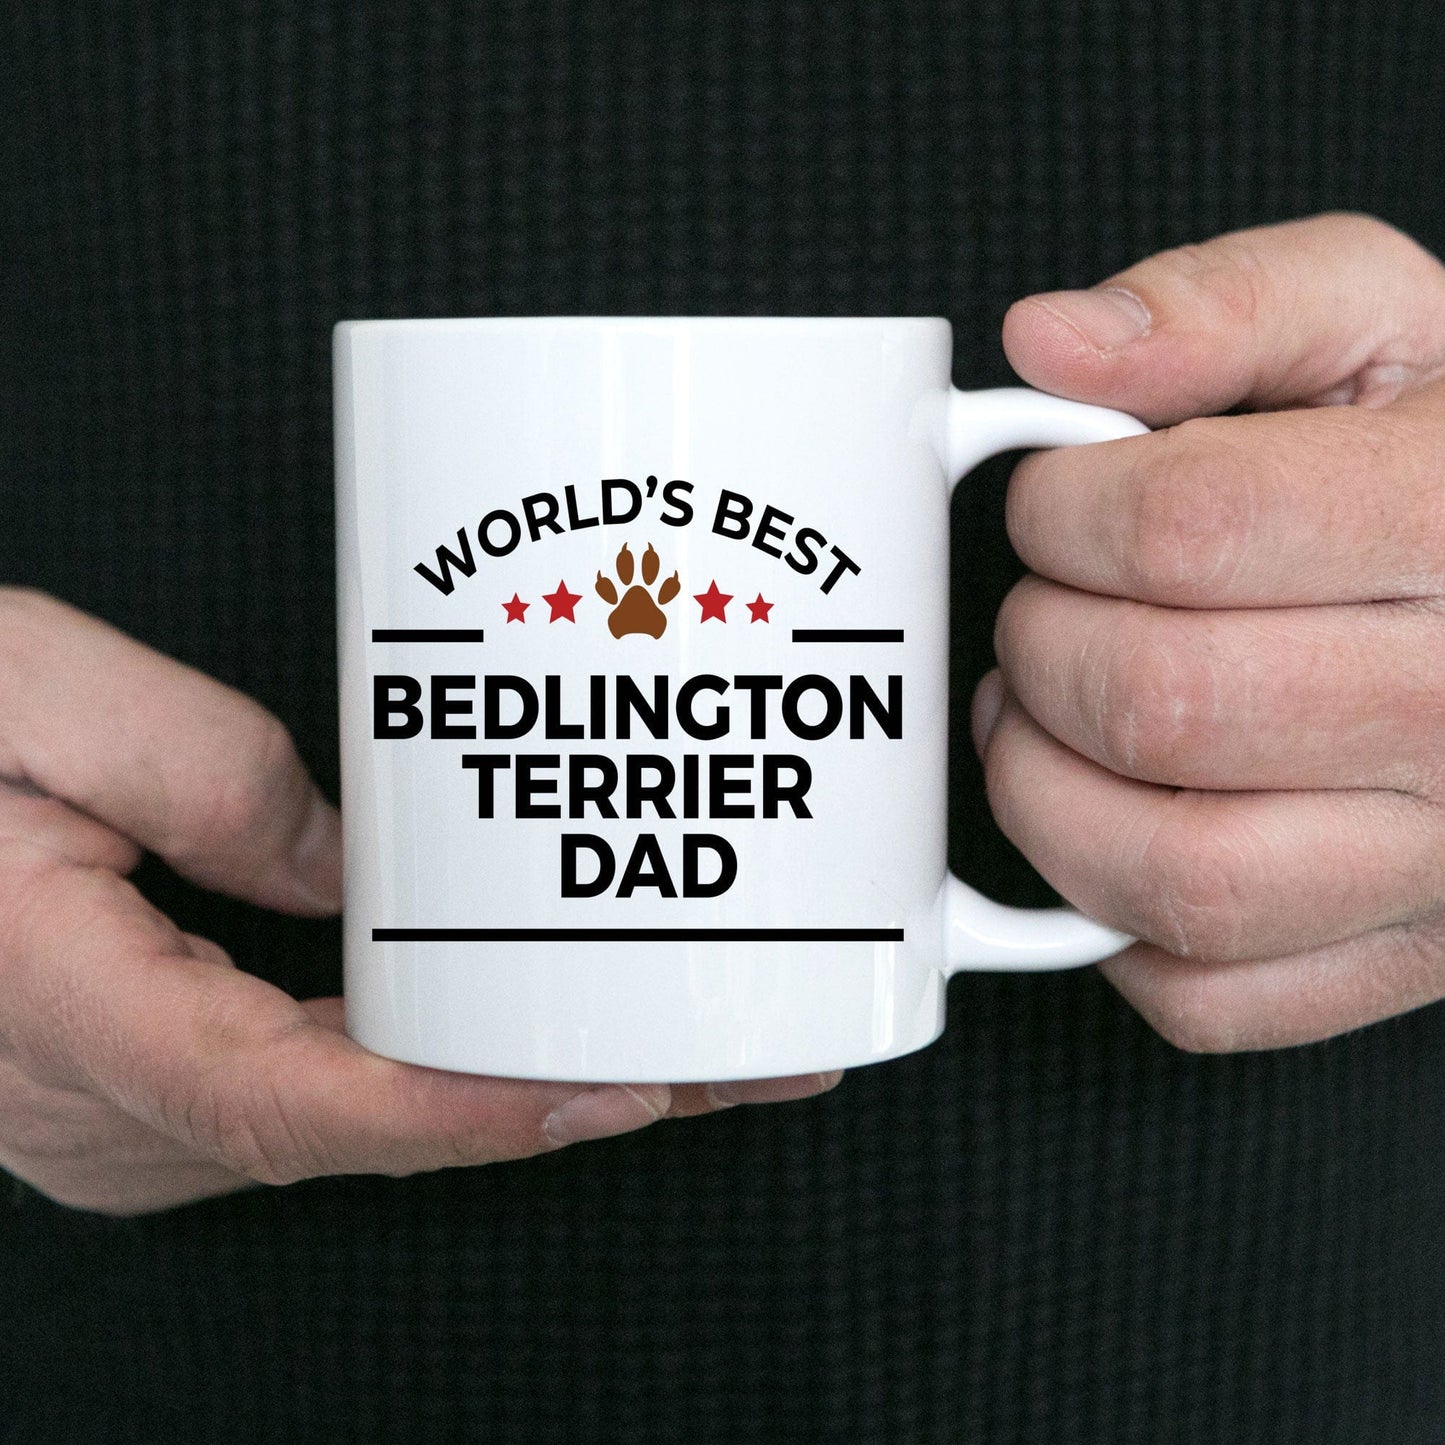 Bedlington Terrier Dog Dad Coffee Mug